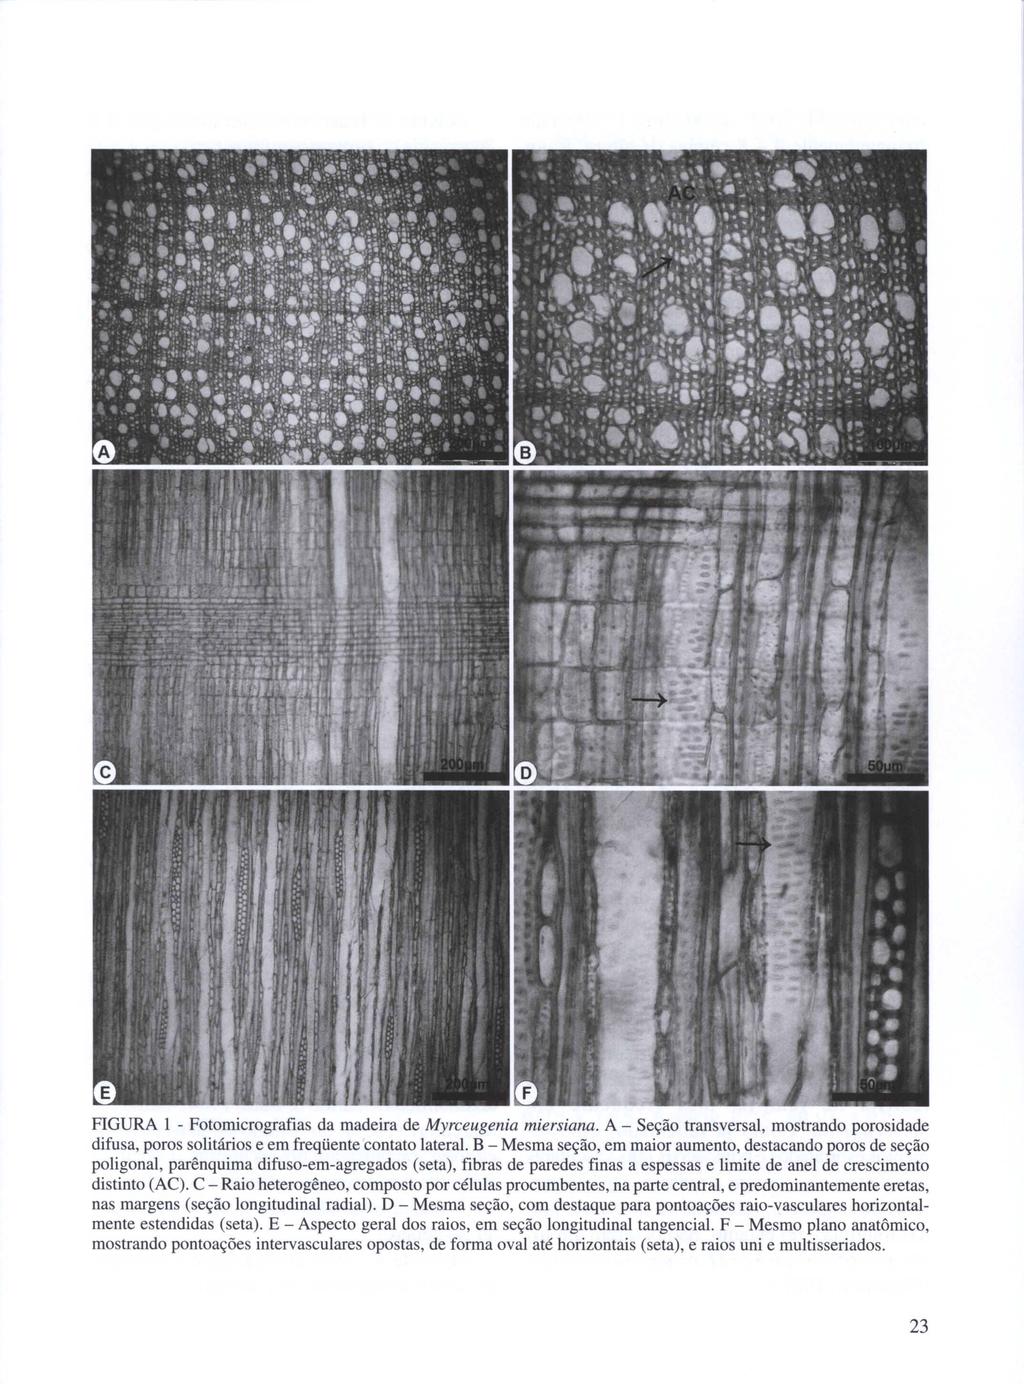 FIGURA I - Fotomicrografias da madeira de Myrceugenia miersiana. A - Seção transversal, mostrando porosidade difusa, poros solitários e em freqüente contato lateral.